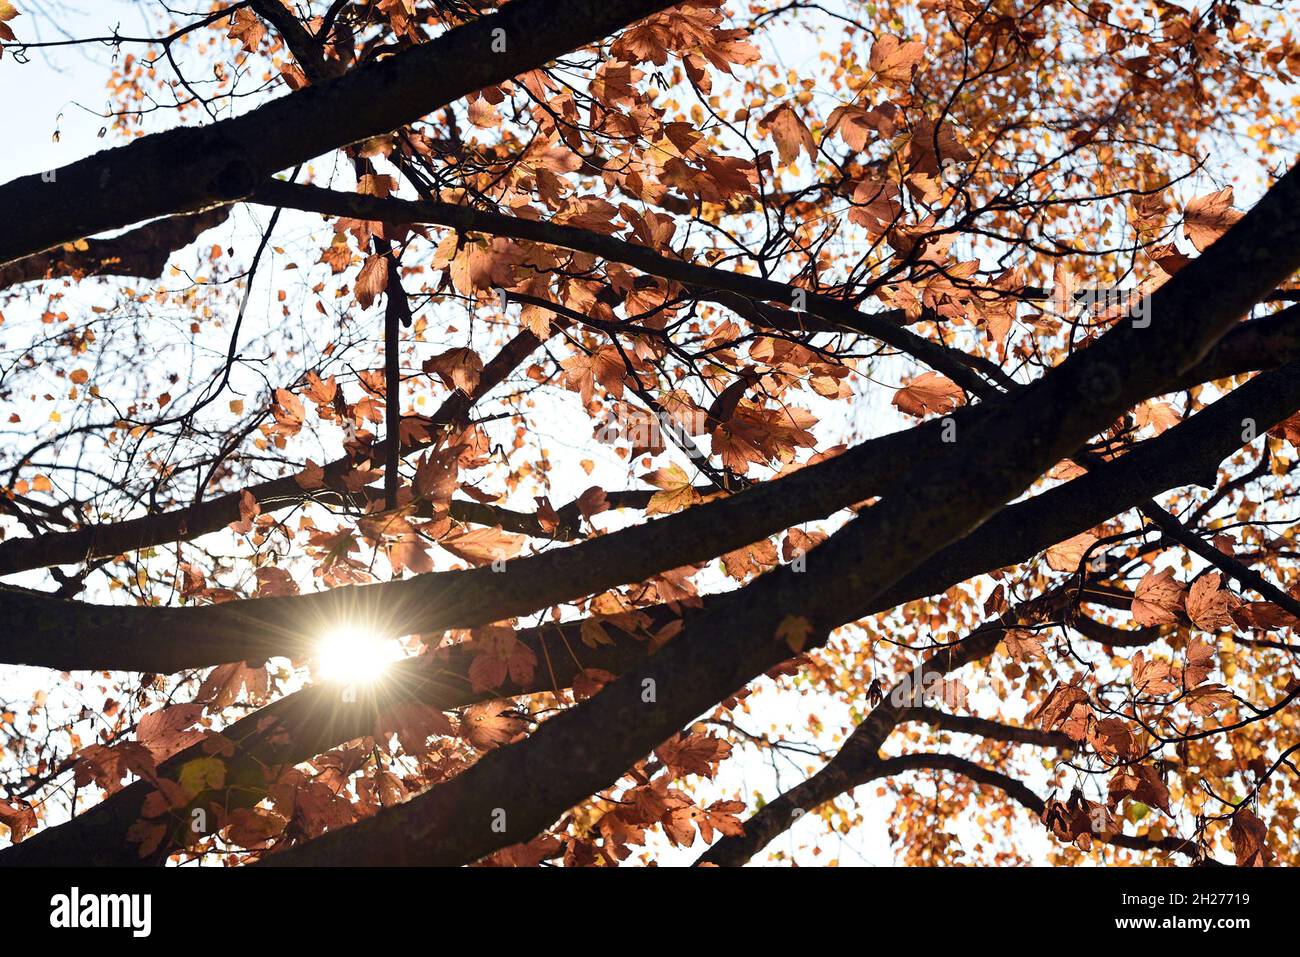 Herbststimmung am Attersee, ein Baum im Gegenlicht - Autumn mood at the Attersee, a tree in backlight Stock Photo